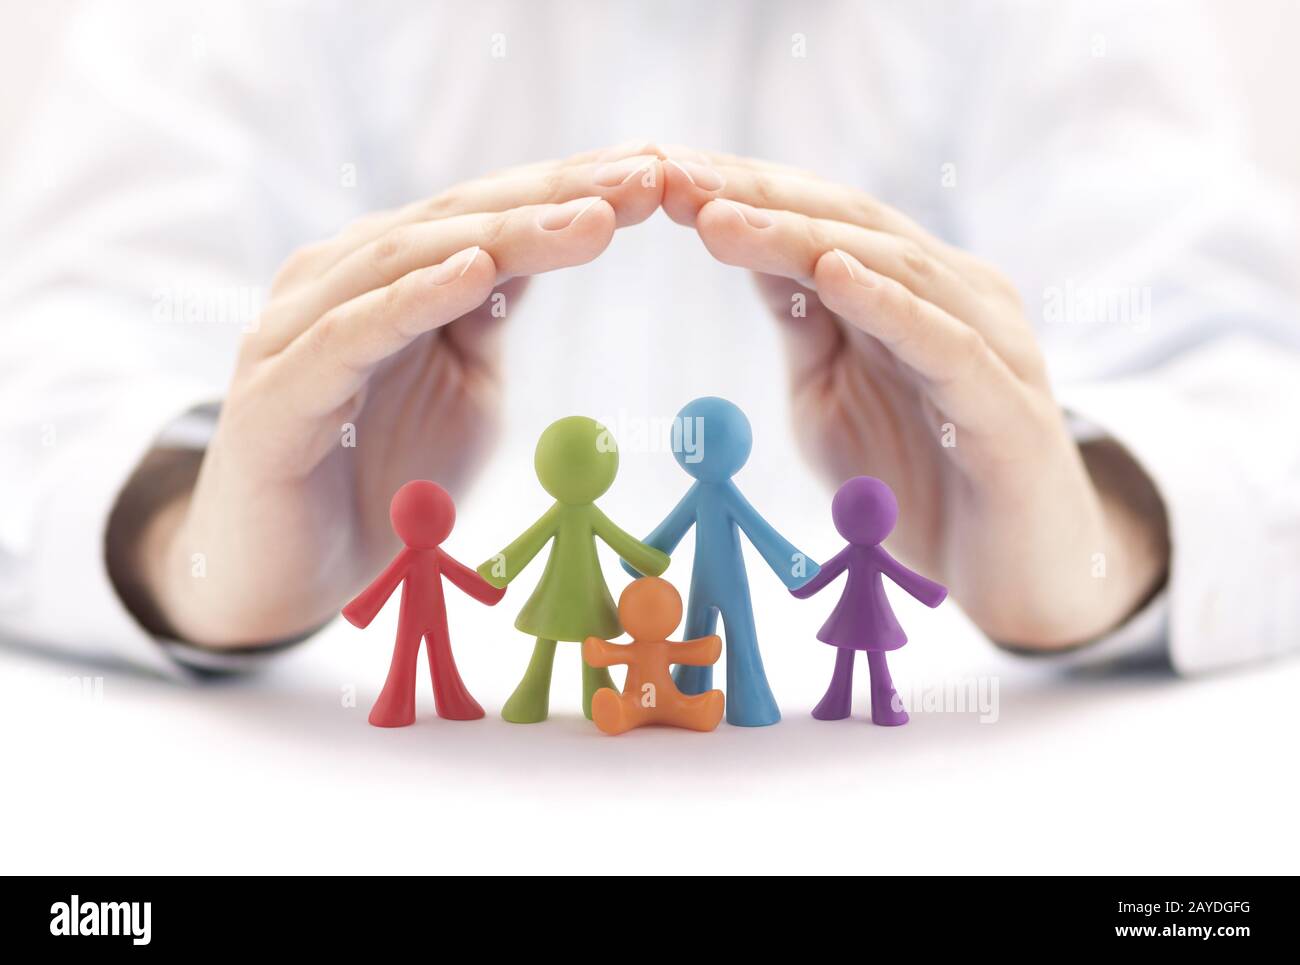 Concepto de seguro familiar con coloridas figuras familiares cubiertas de manos Foto de stock